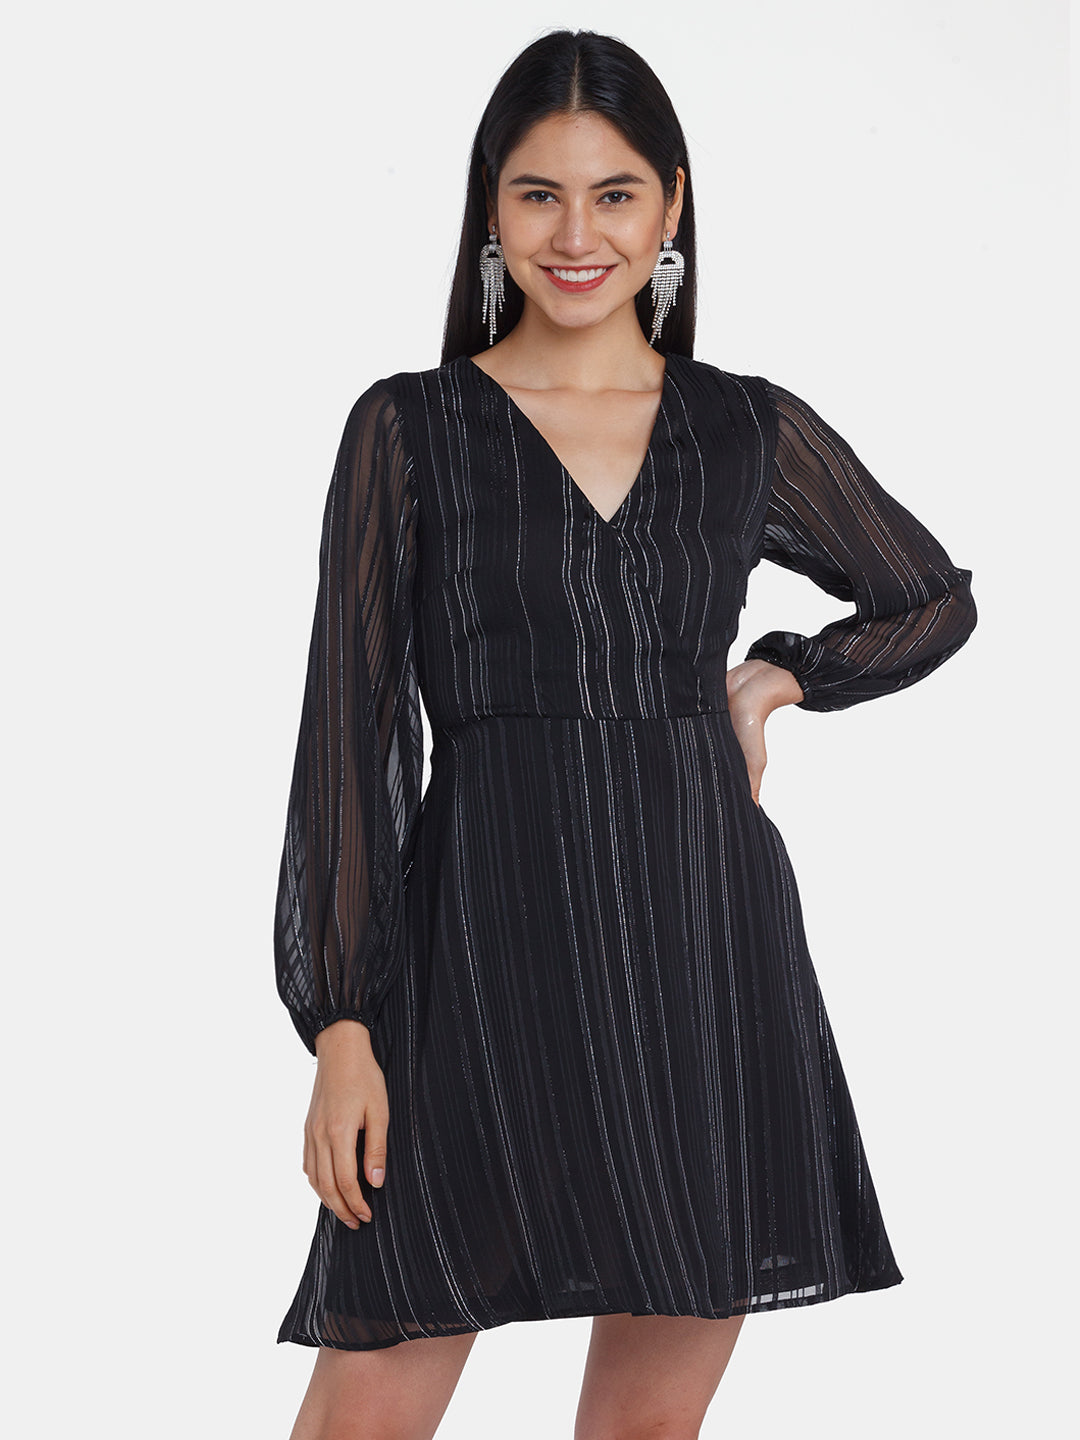 Black Striped Short Dress For Women